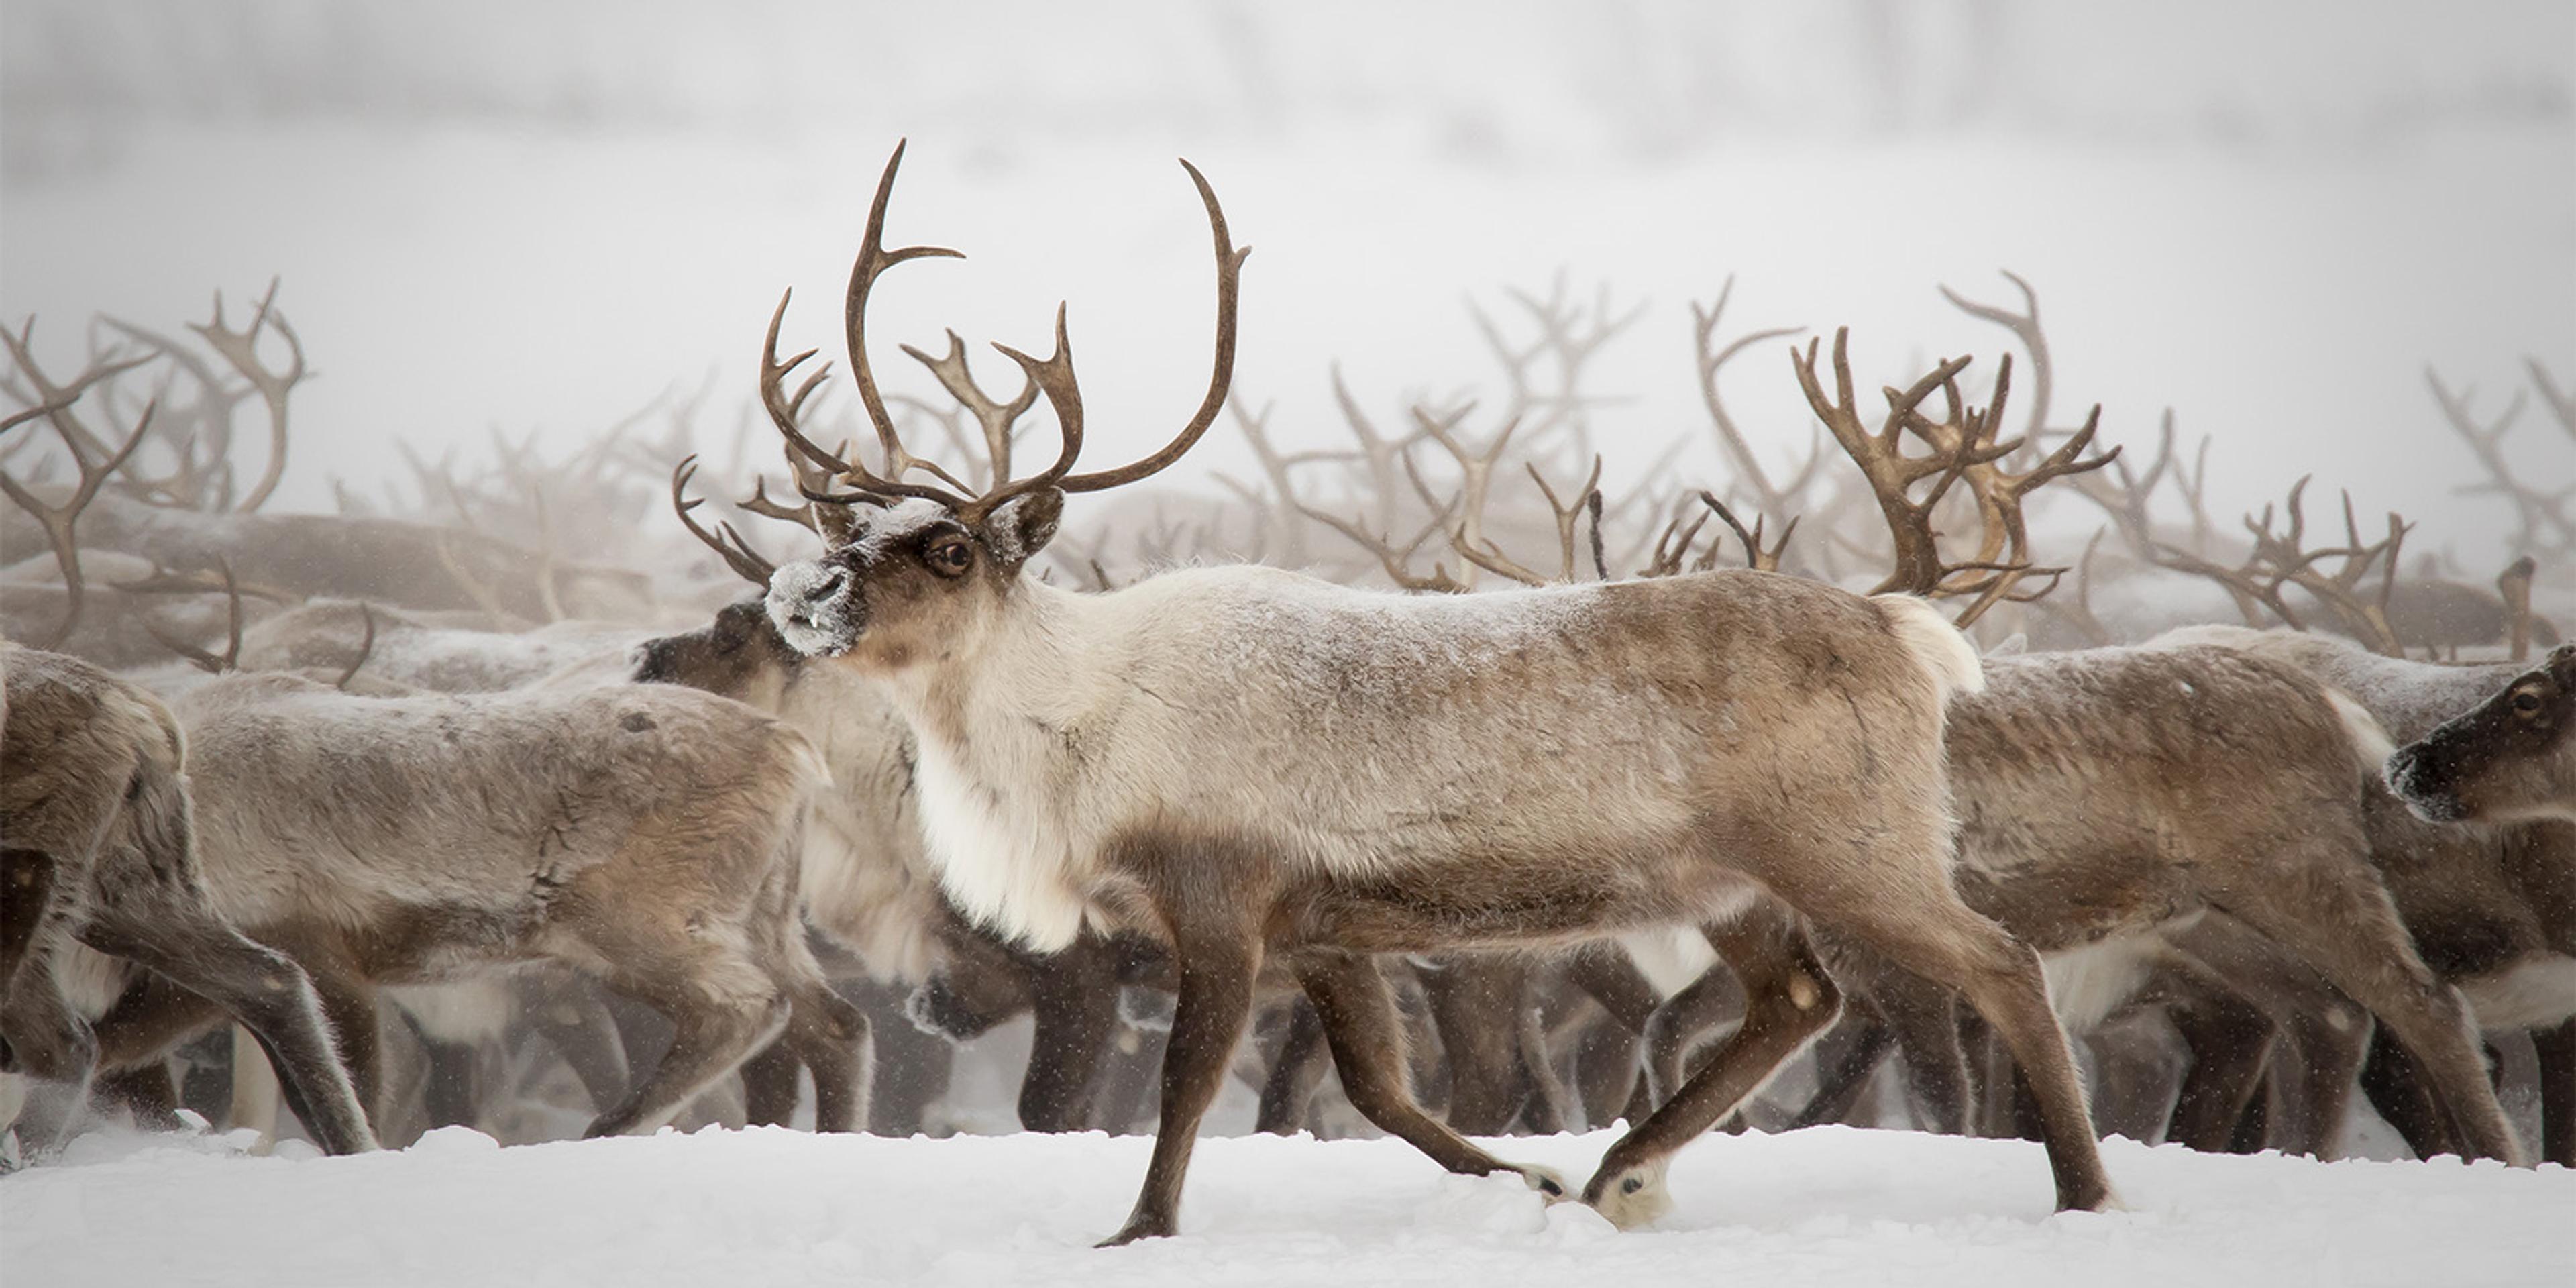 A herd of reindeer in a snowstorm.